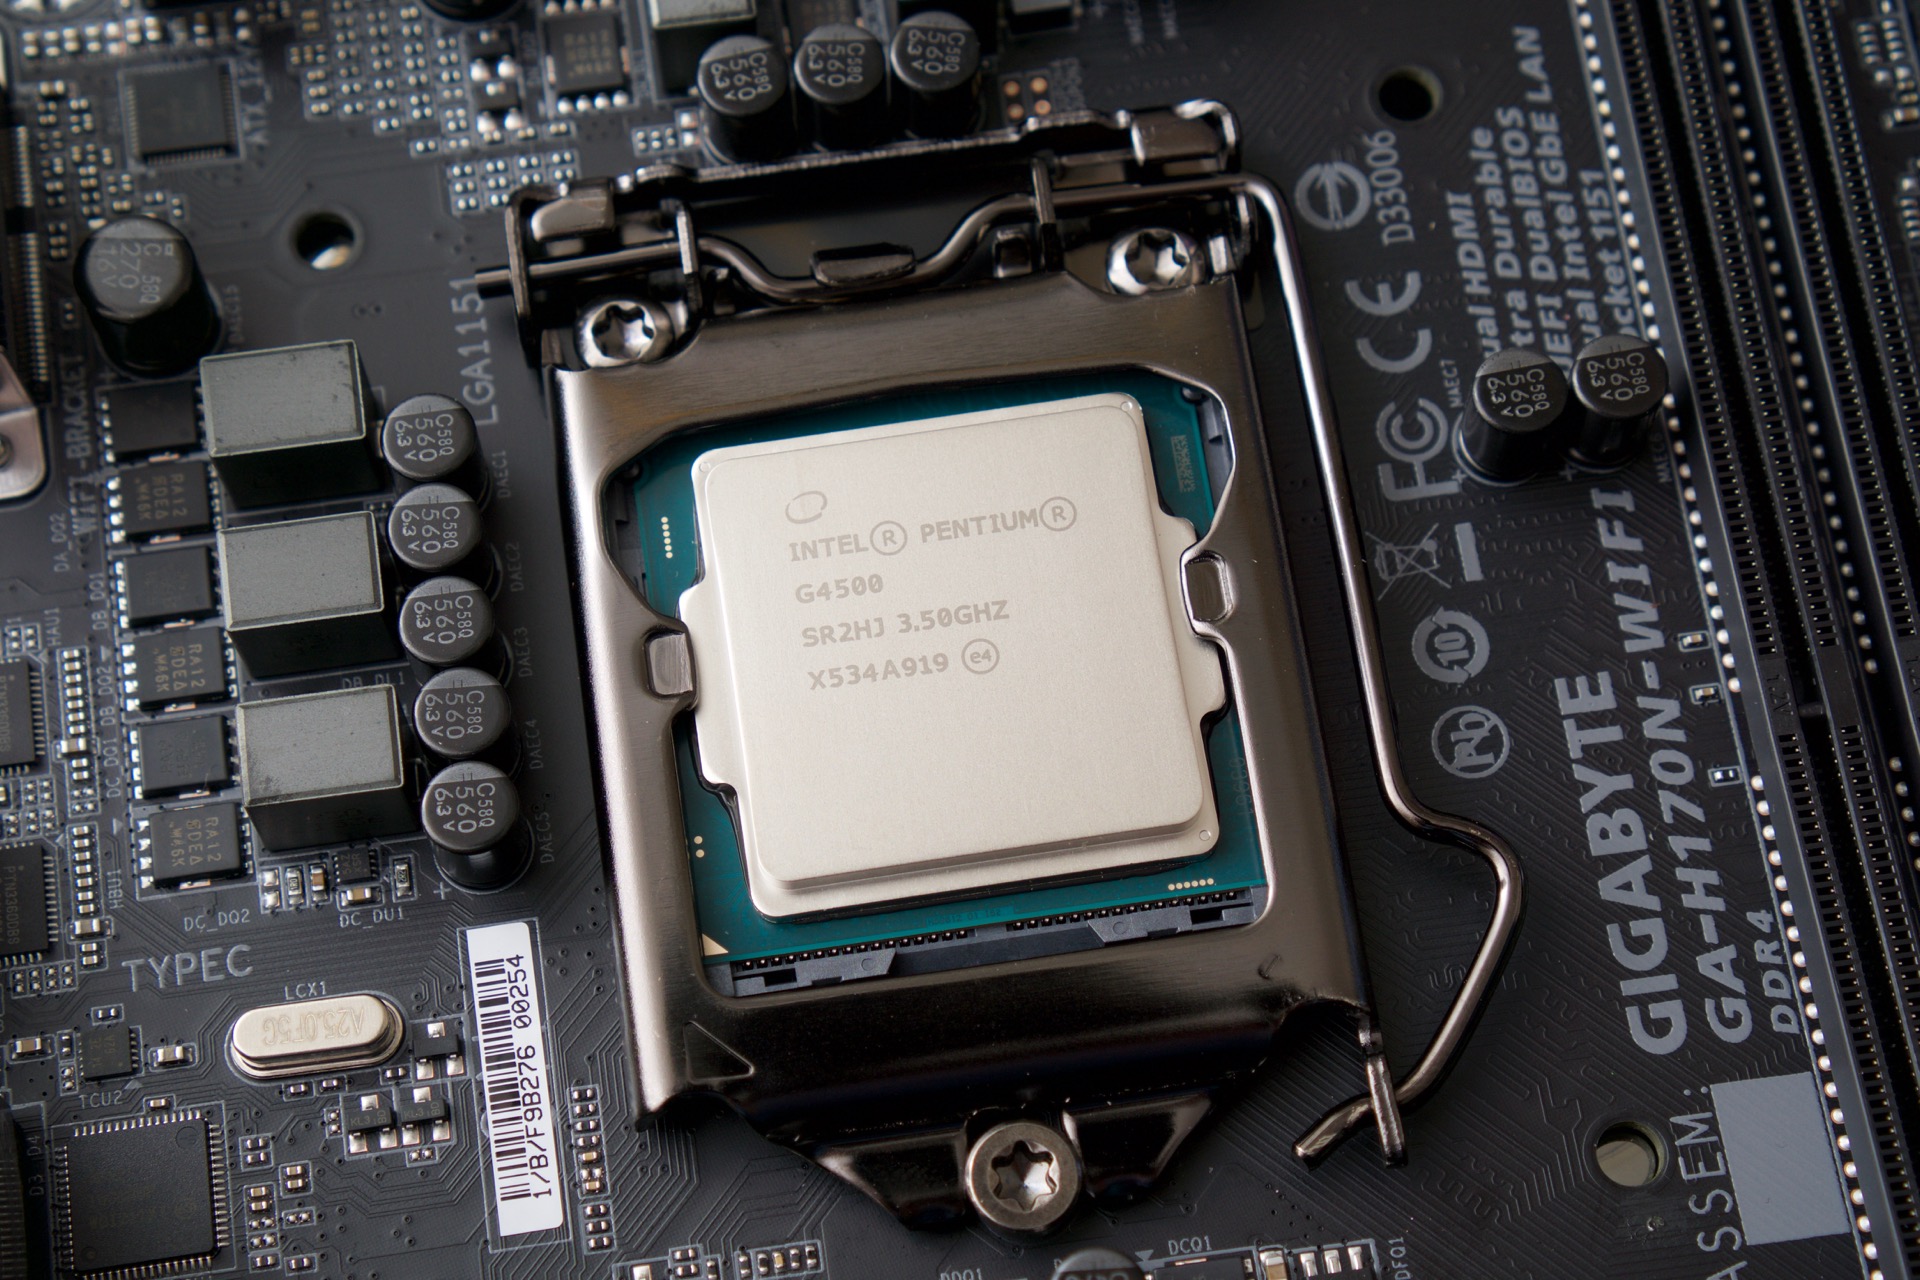 CPU của Intel vấp lỗi nghiêm trọng, macOS có thể sẽ giảm hiệu năng đáng kể cả khi đã sửa lỗi